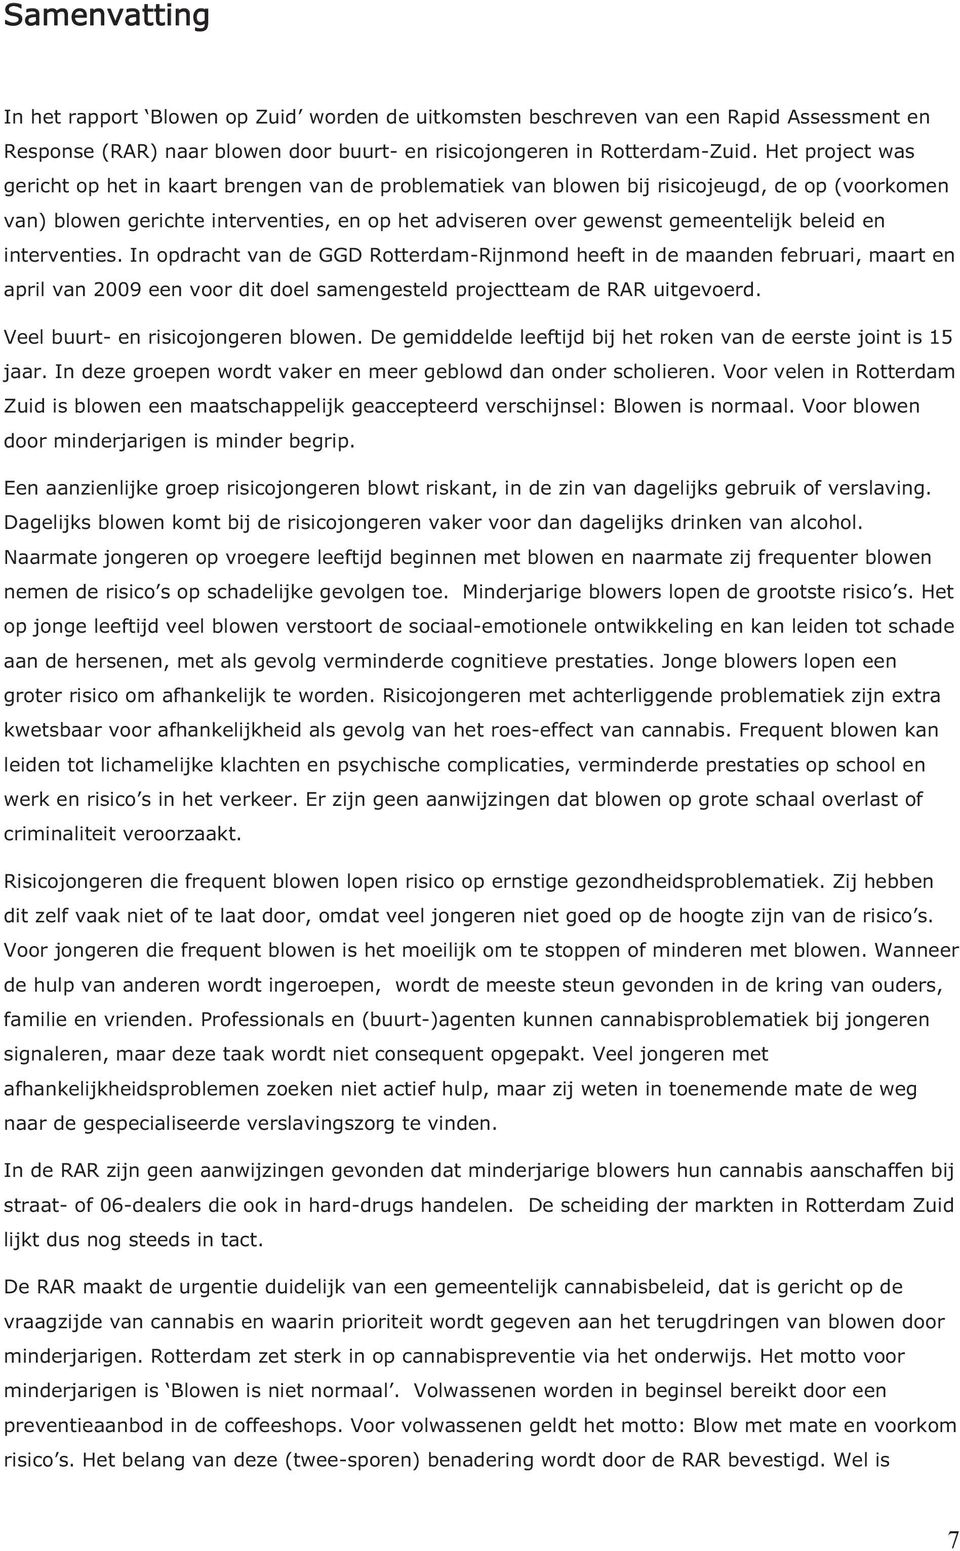 beleid en interventies. In opdracht van de GGD Rotterdam-Rijnmond heeft in de maanden februari, maart en april van 2009 een voor dit doel samengesteld projectteam de RAR uitgevoerd.